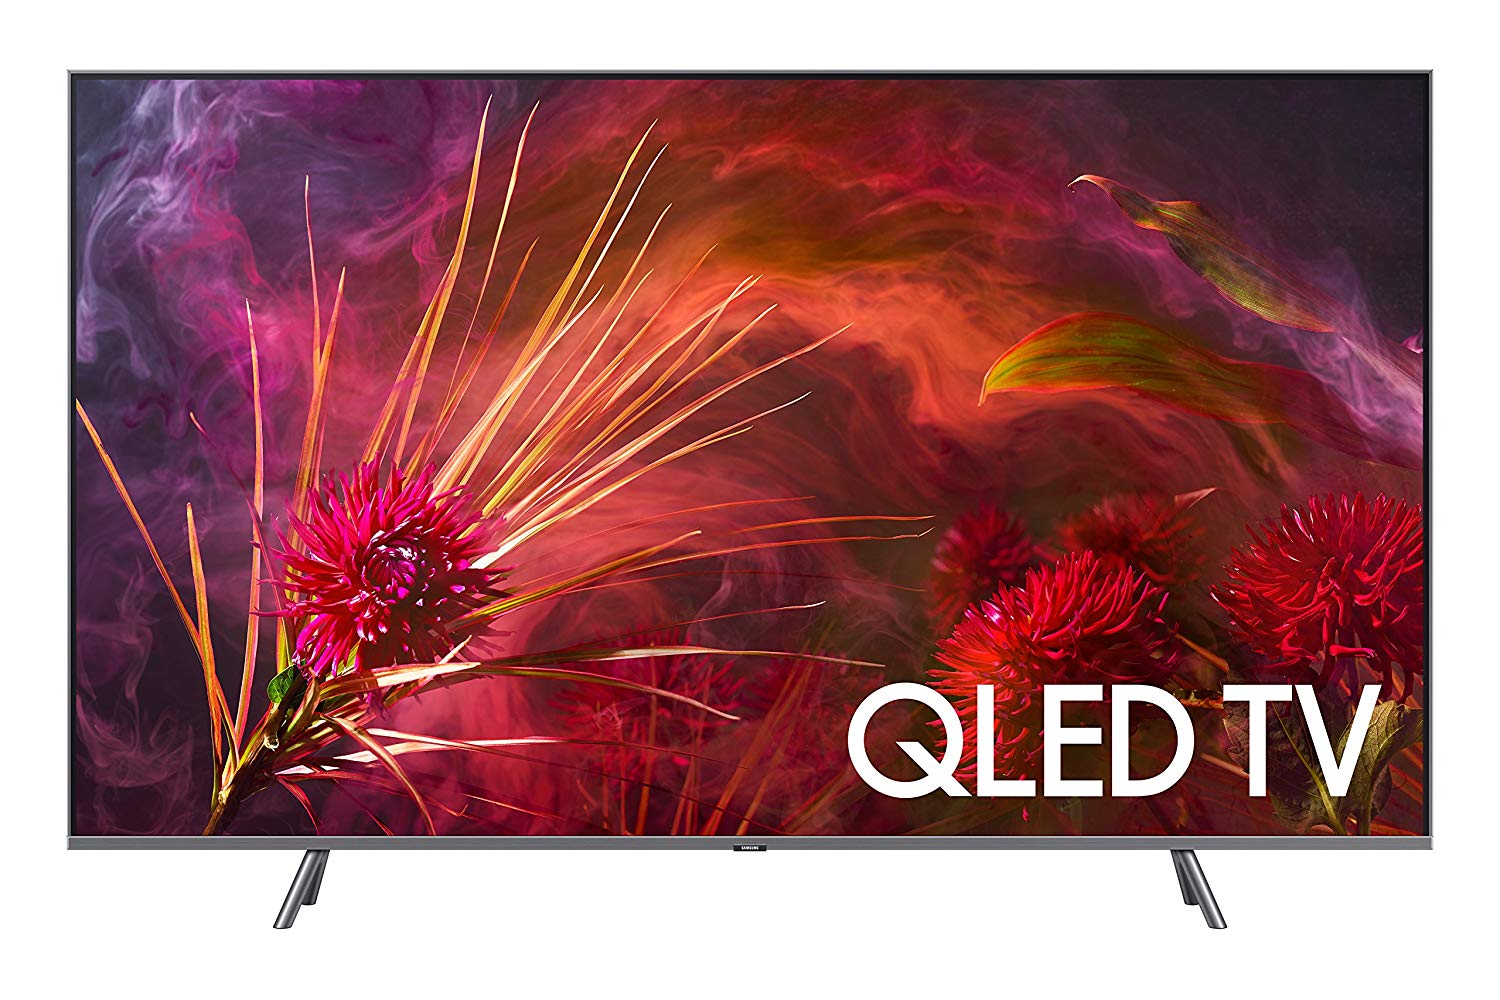 Samsung QN75Q8F Płaski 75-calowy telewizor QLED 4K UHD Smart TV z serii 8 2018